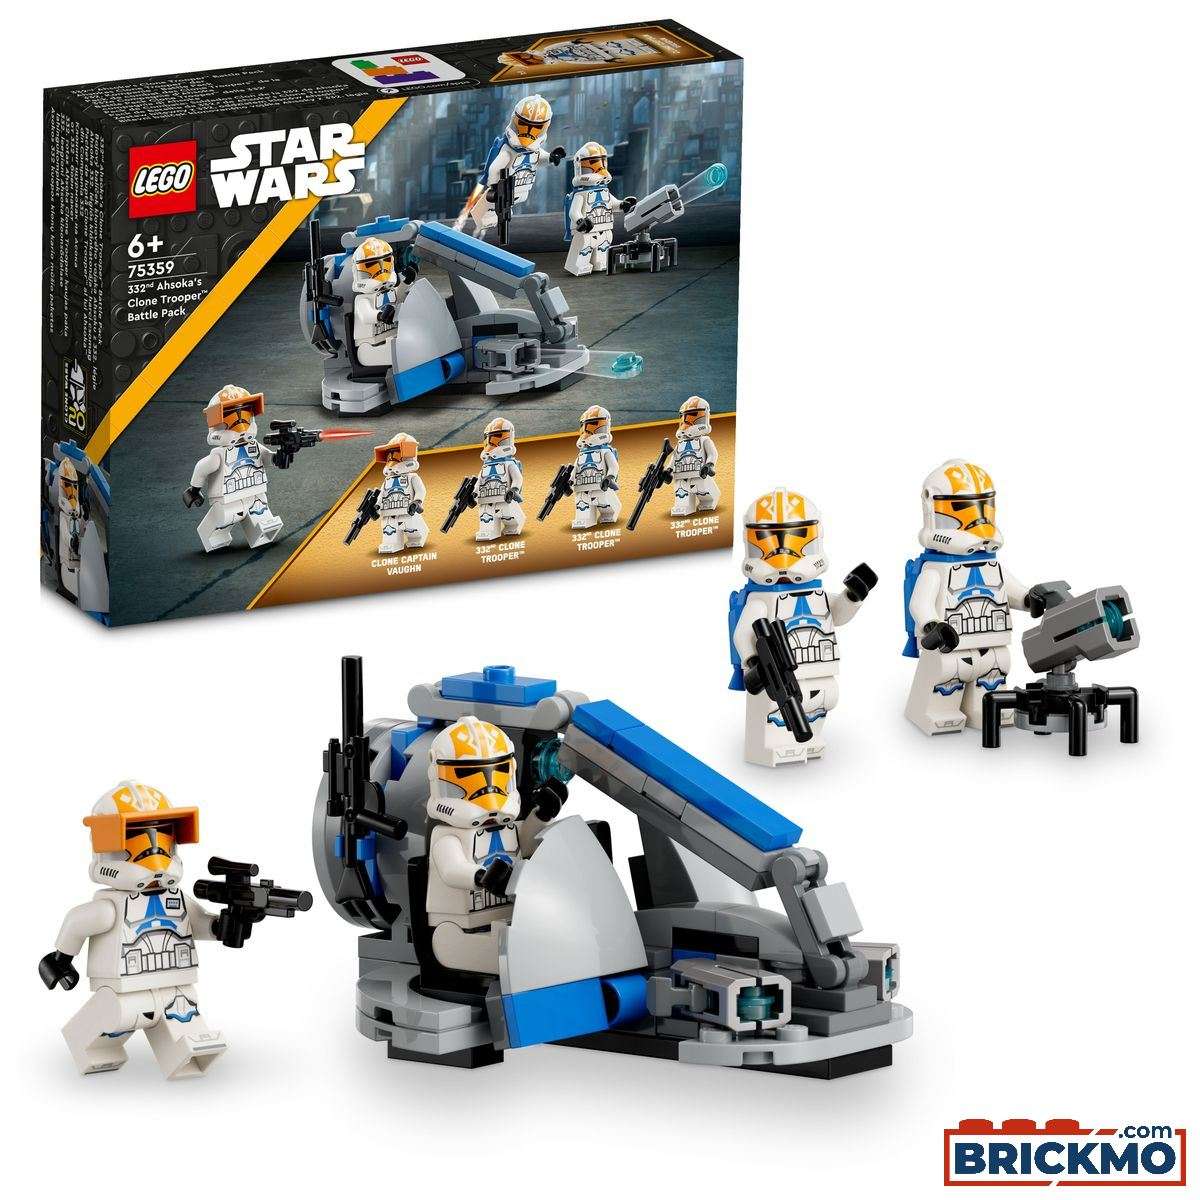 LEGO Star Wars 75359 Battle Pack med Ahsokas klonsoldater fra 332. kompagni 75359